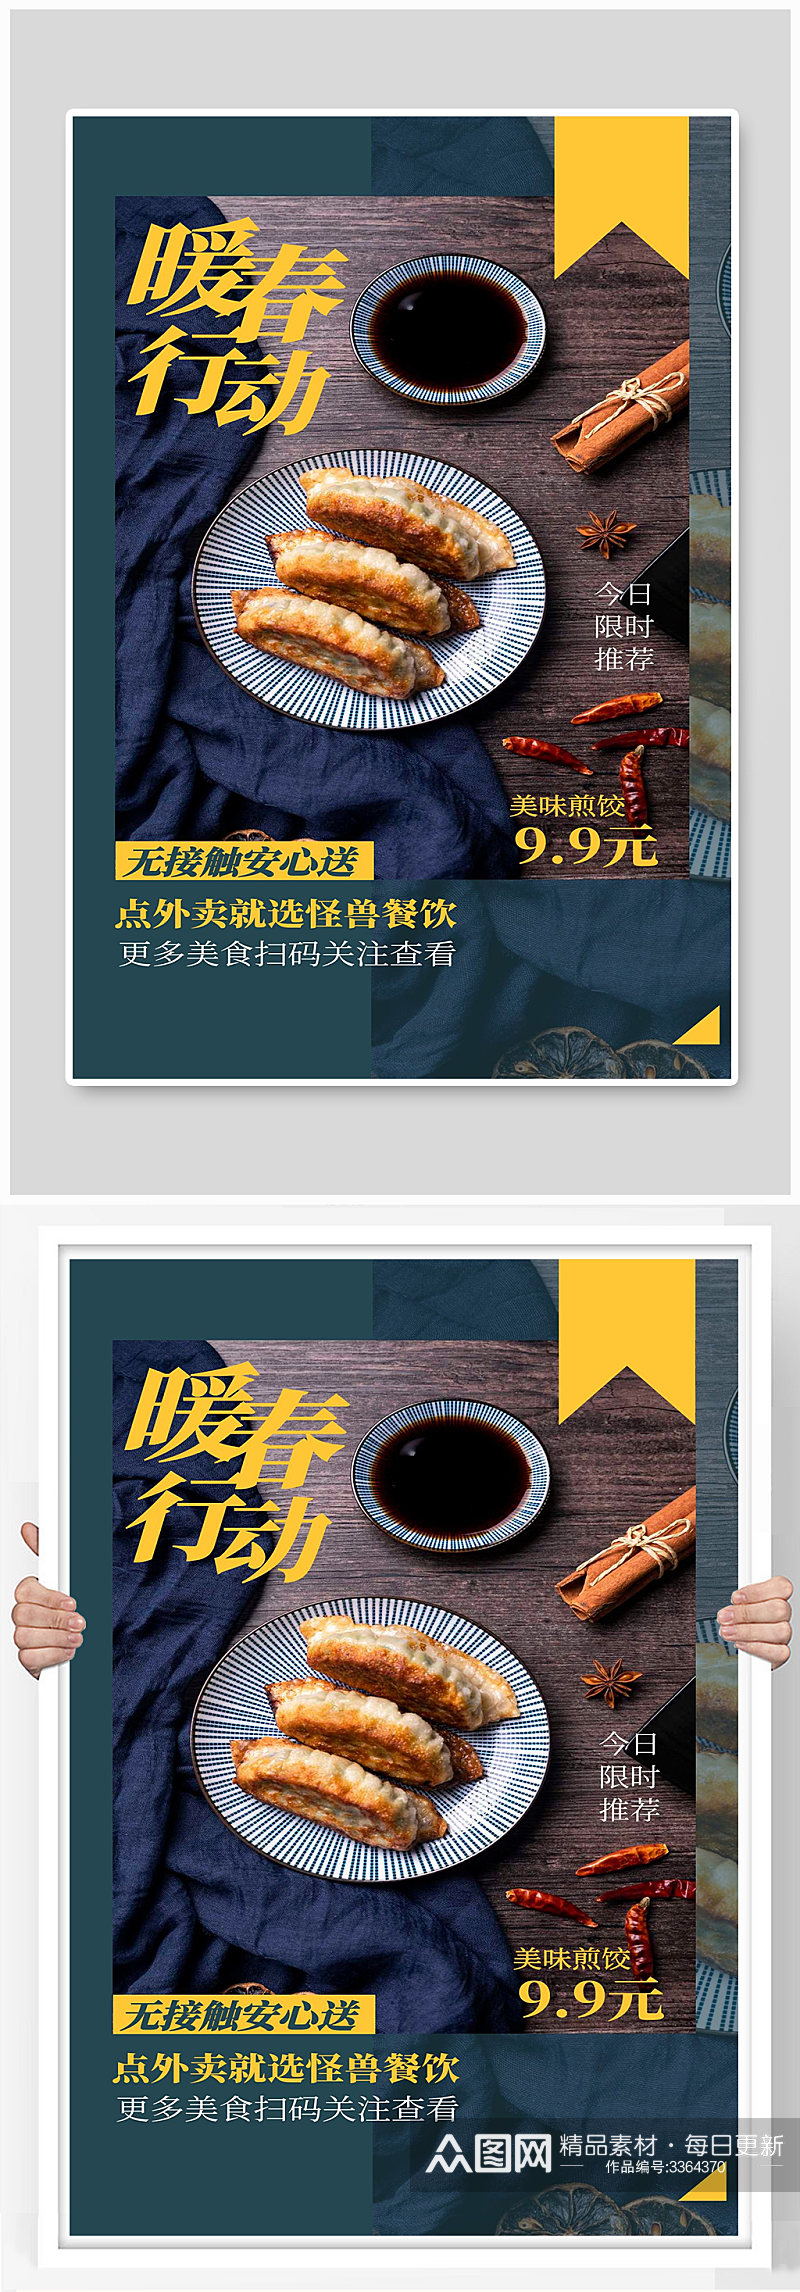 美味煎饺宣传海报设计素材